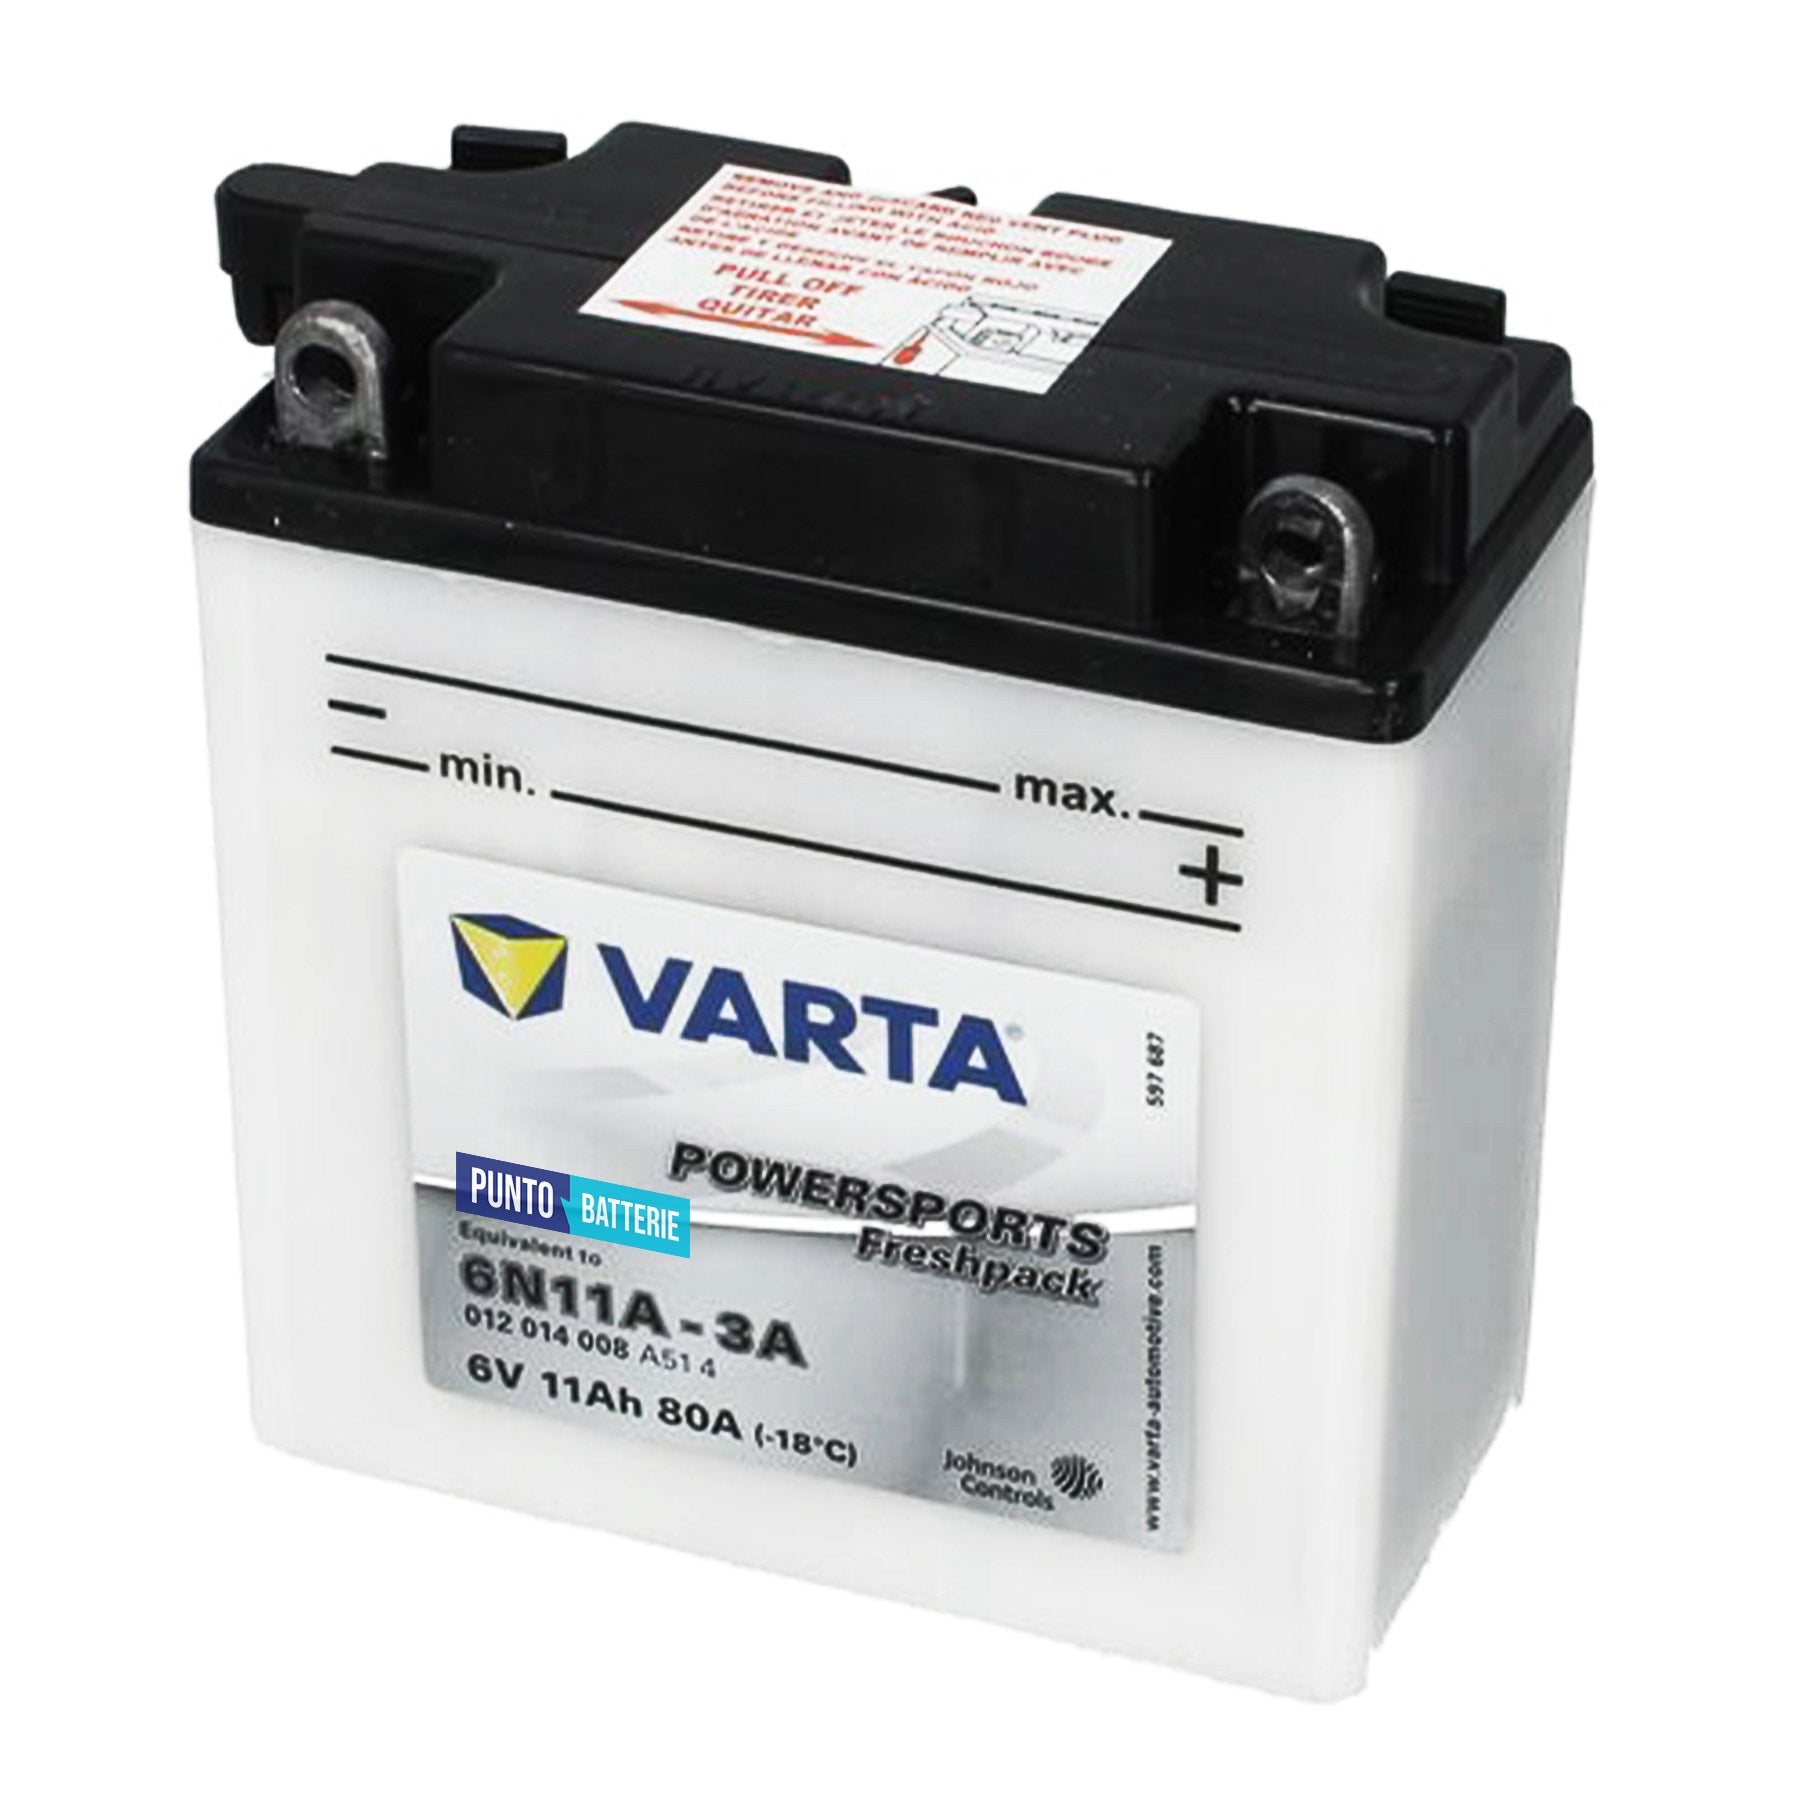 Batteria Varta 11Ah, 6V, 80A , 136x91x146mm